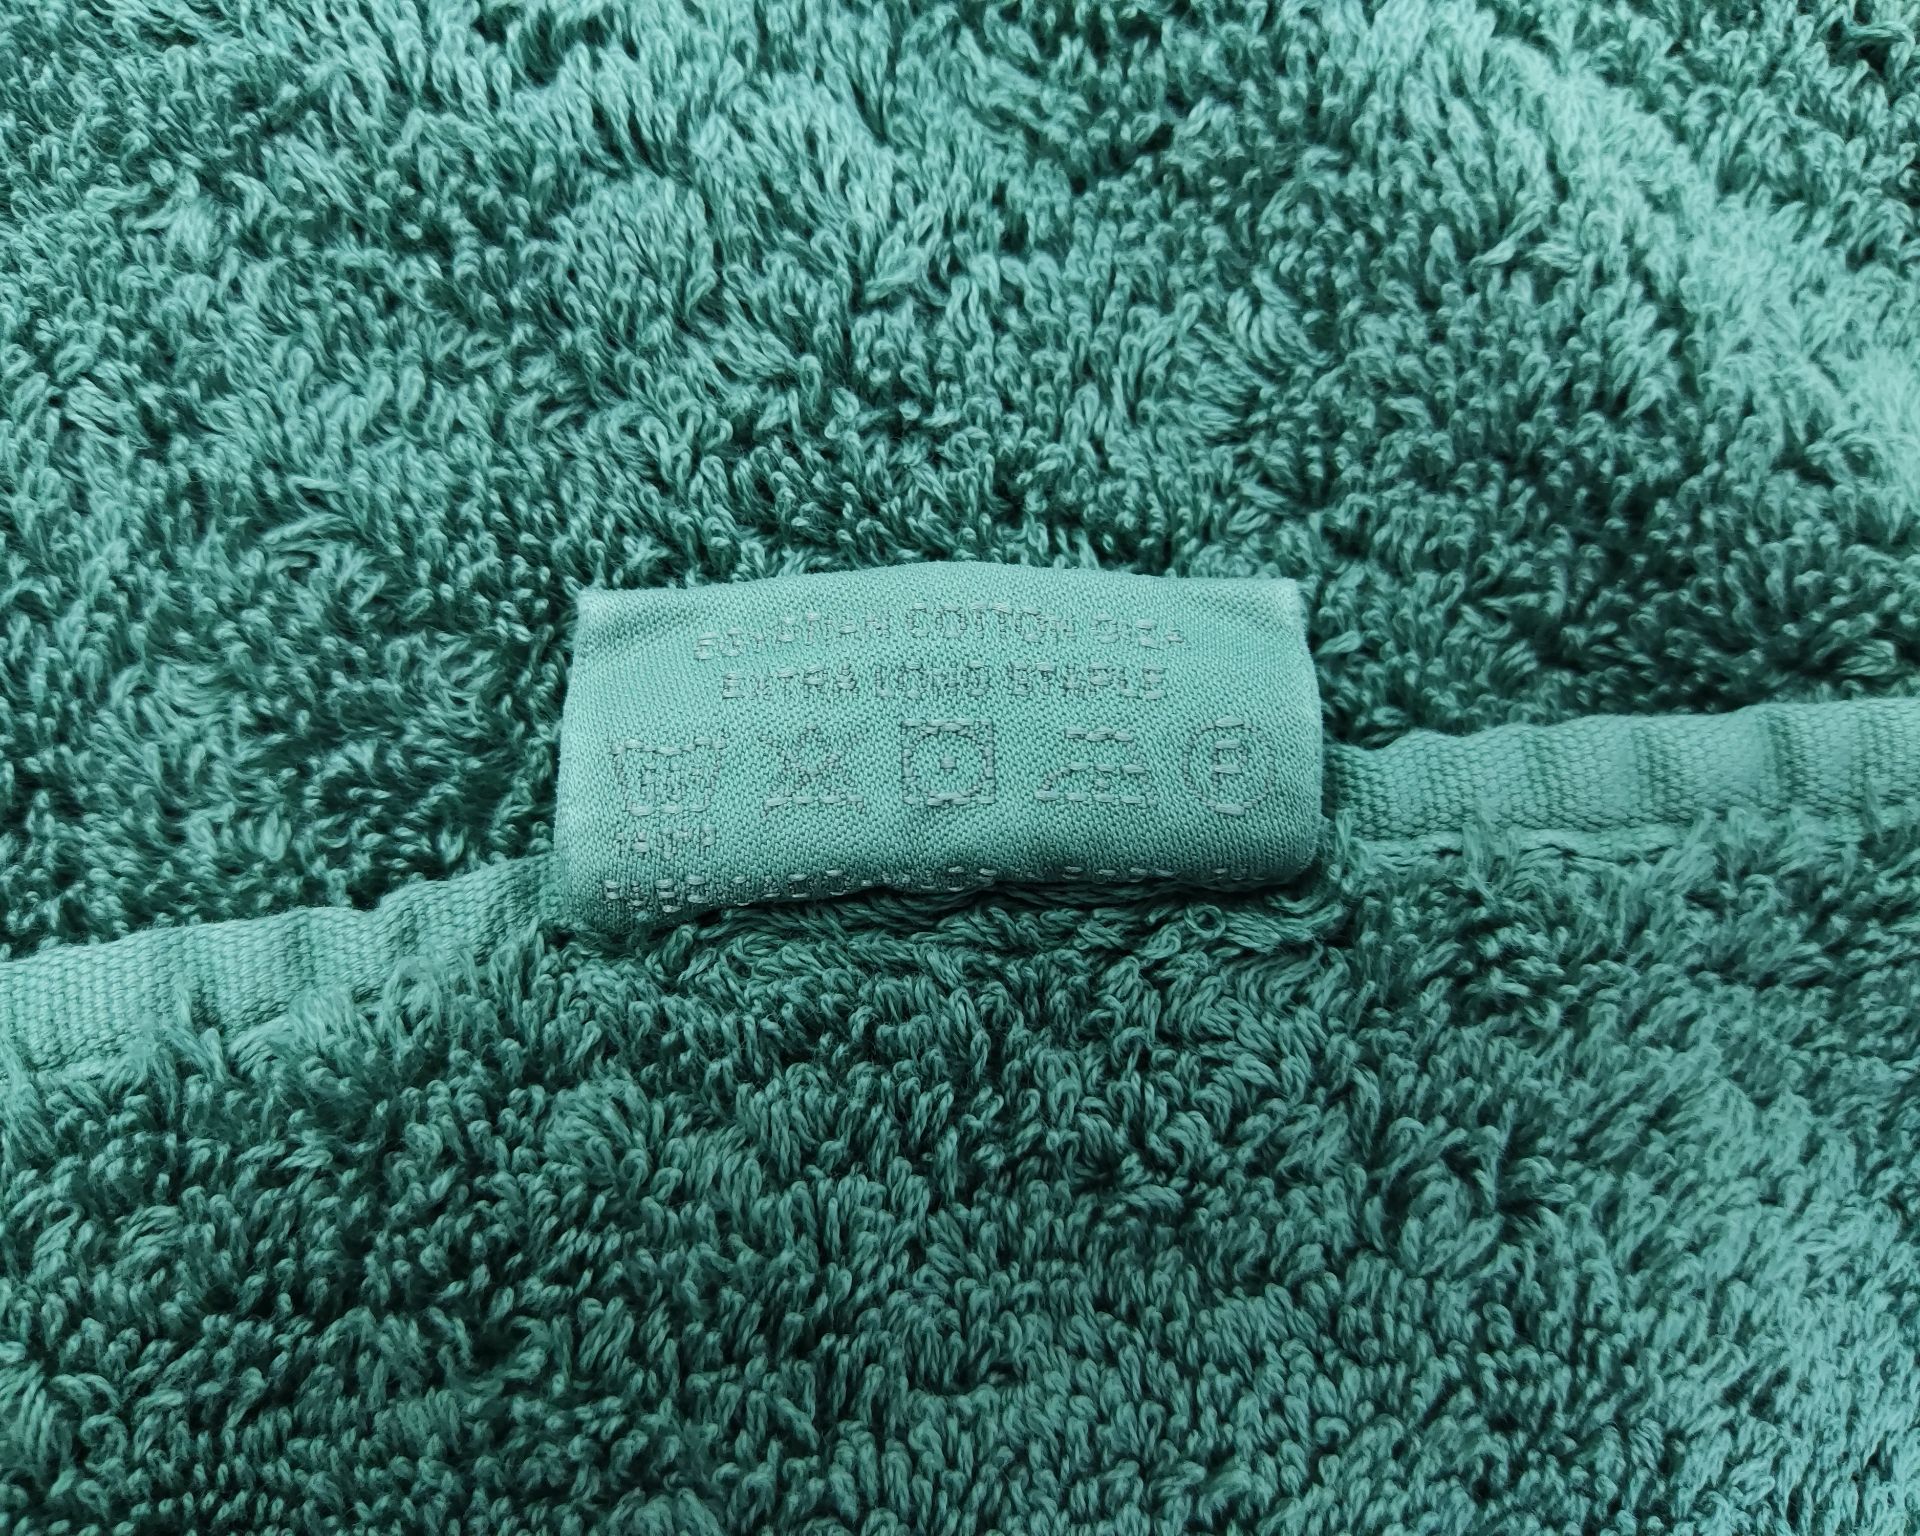 1 x ABYSS &amp; HABIDECOR Super Pile Egyptian Cotton Bath Towel 70cm x 140cm - Original RRP £93.00 - Image 2 of 6